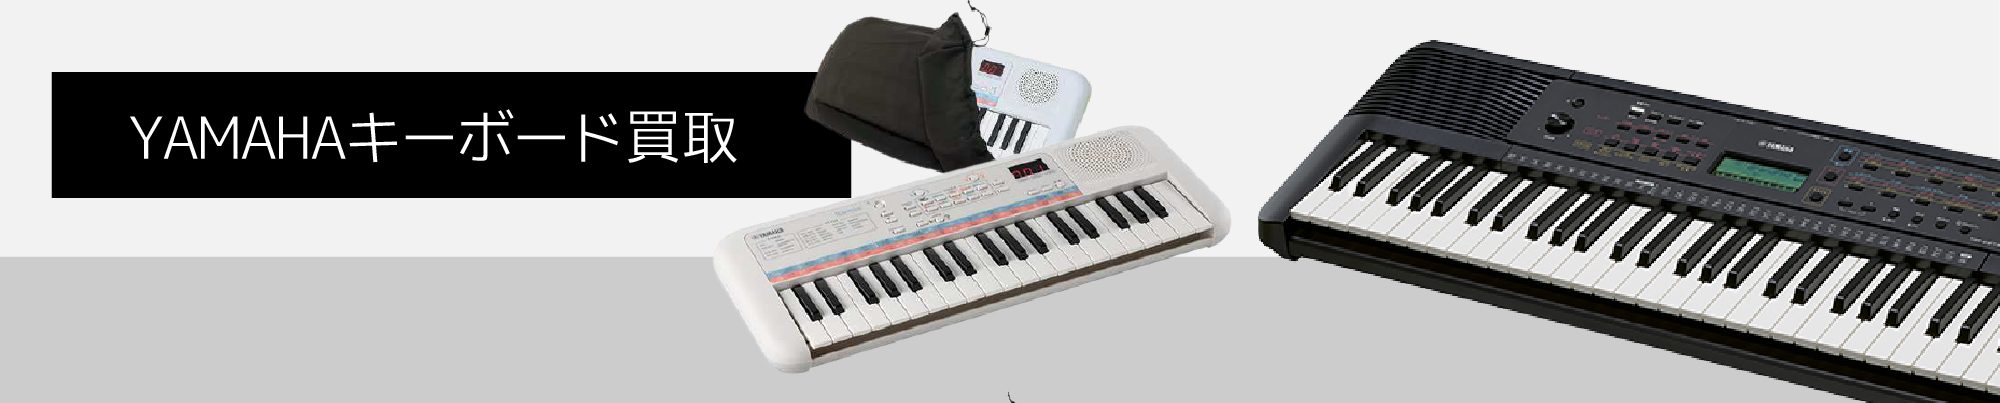 YAMAHAのキーボード高価買取実施中 |電子ピアノ・シンセサイザー積極